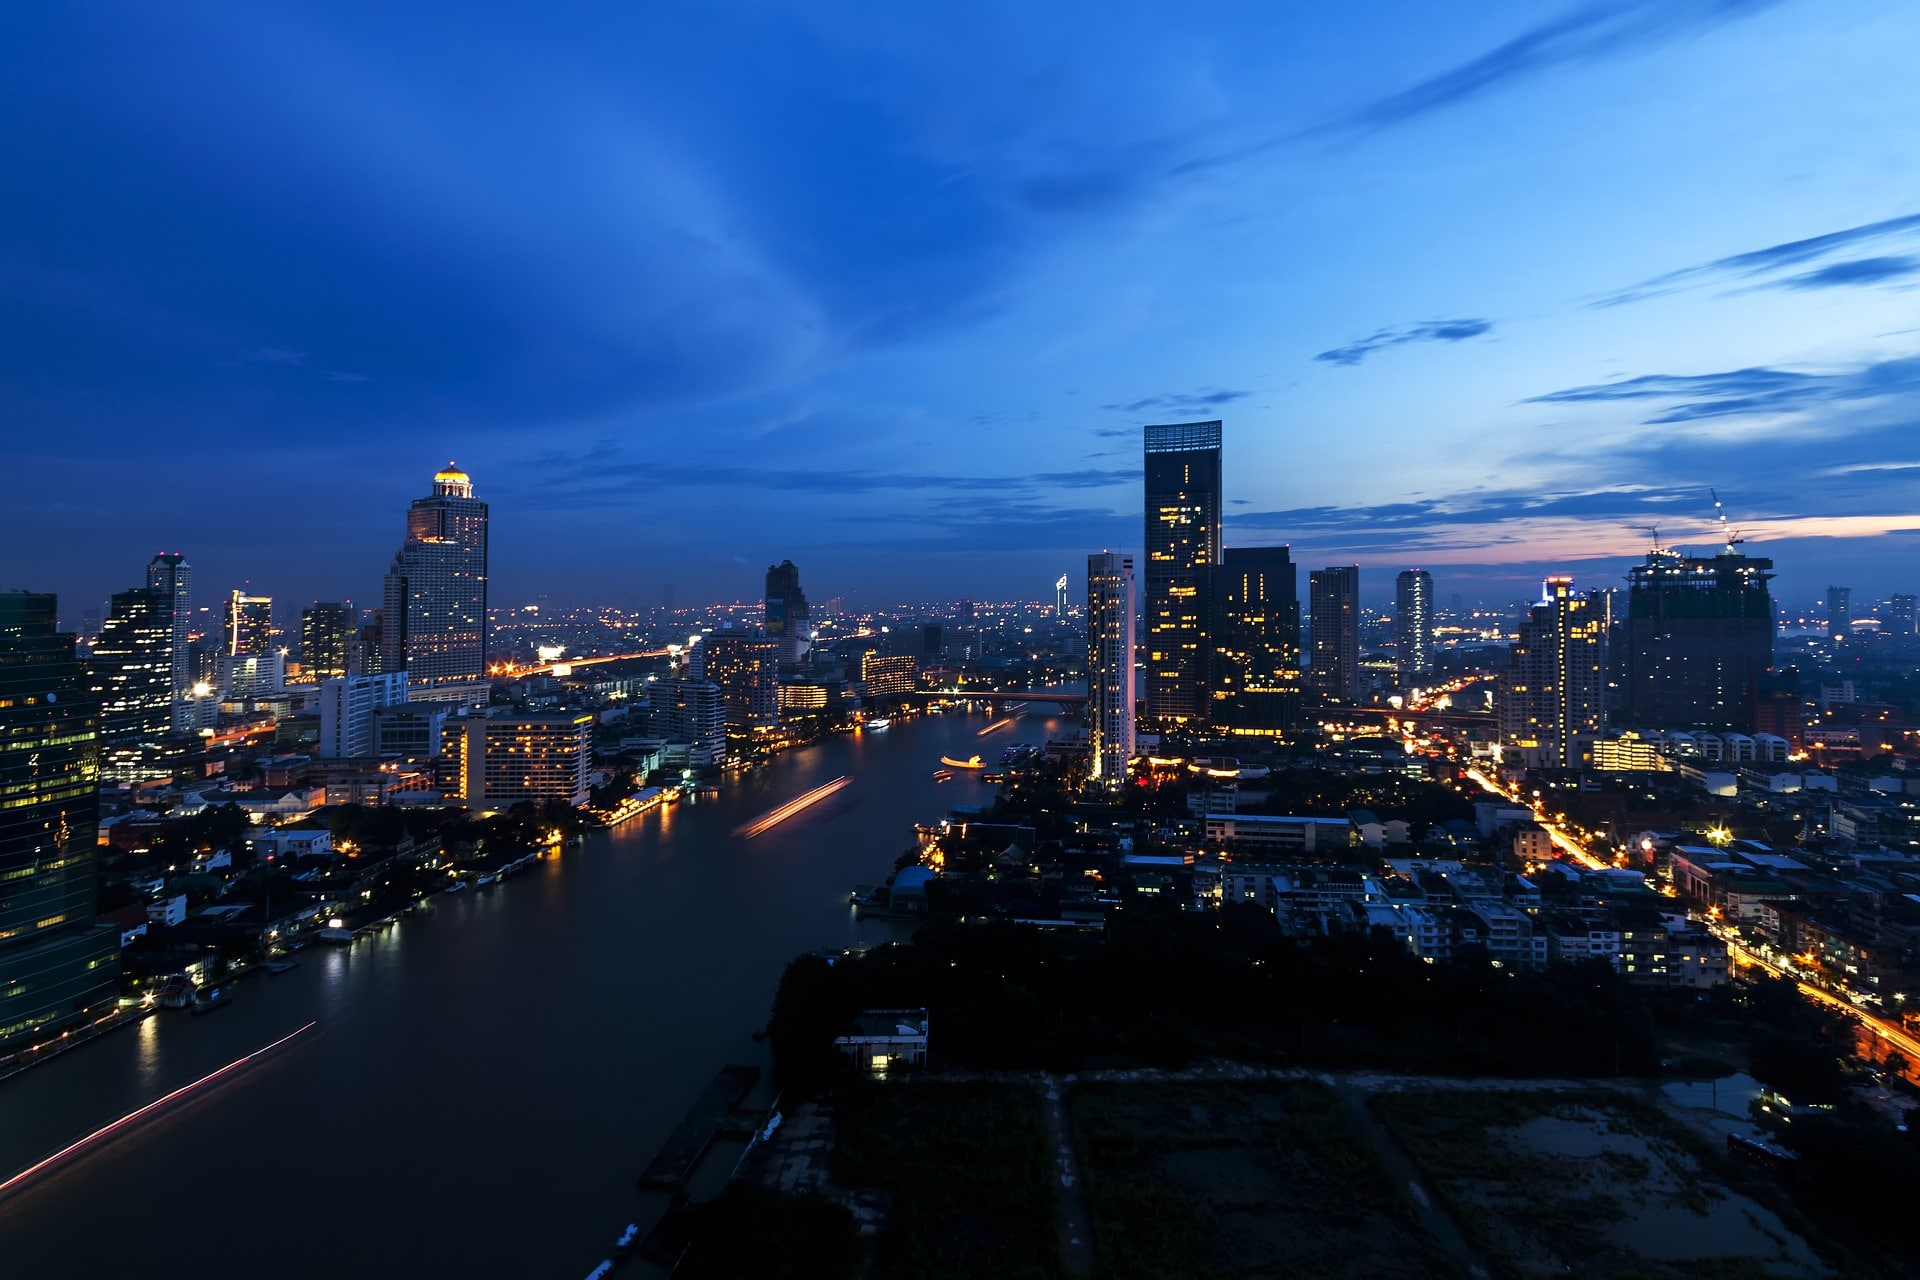 Vacances à Bangkok en Juillet 2023